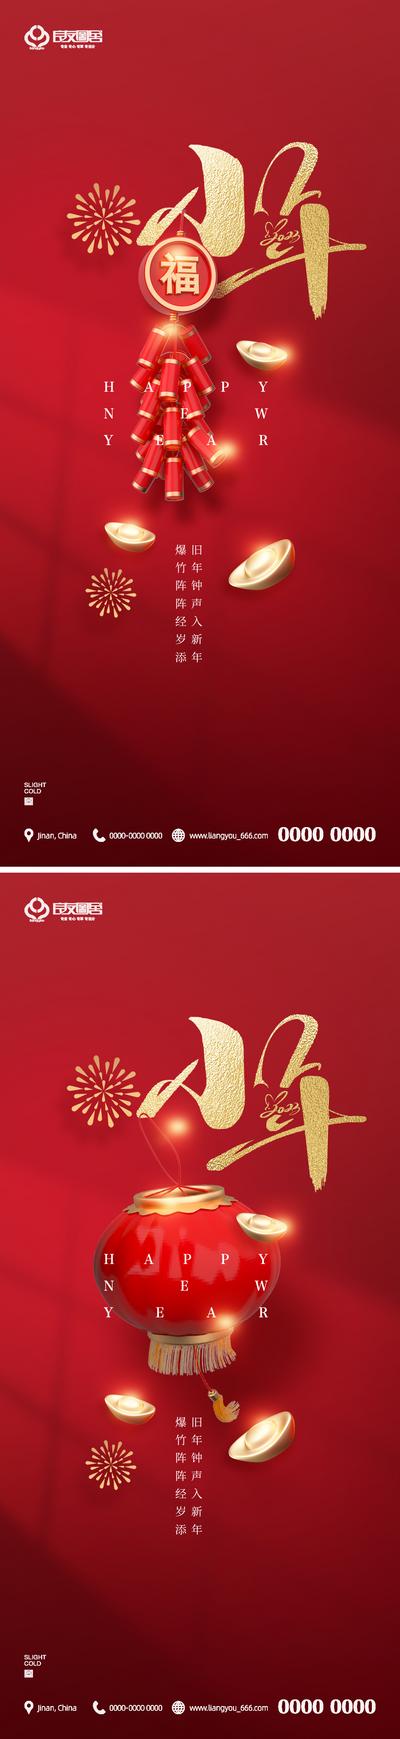 【南门网】海报 房地产 小年 新年 中国传统节日 鞭炮 灯笼 金元宝 红金